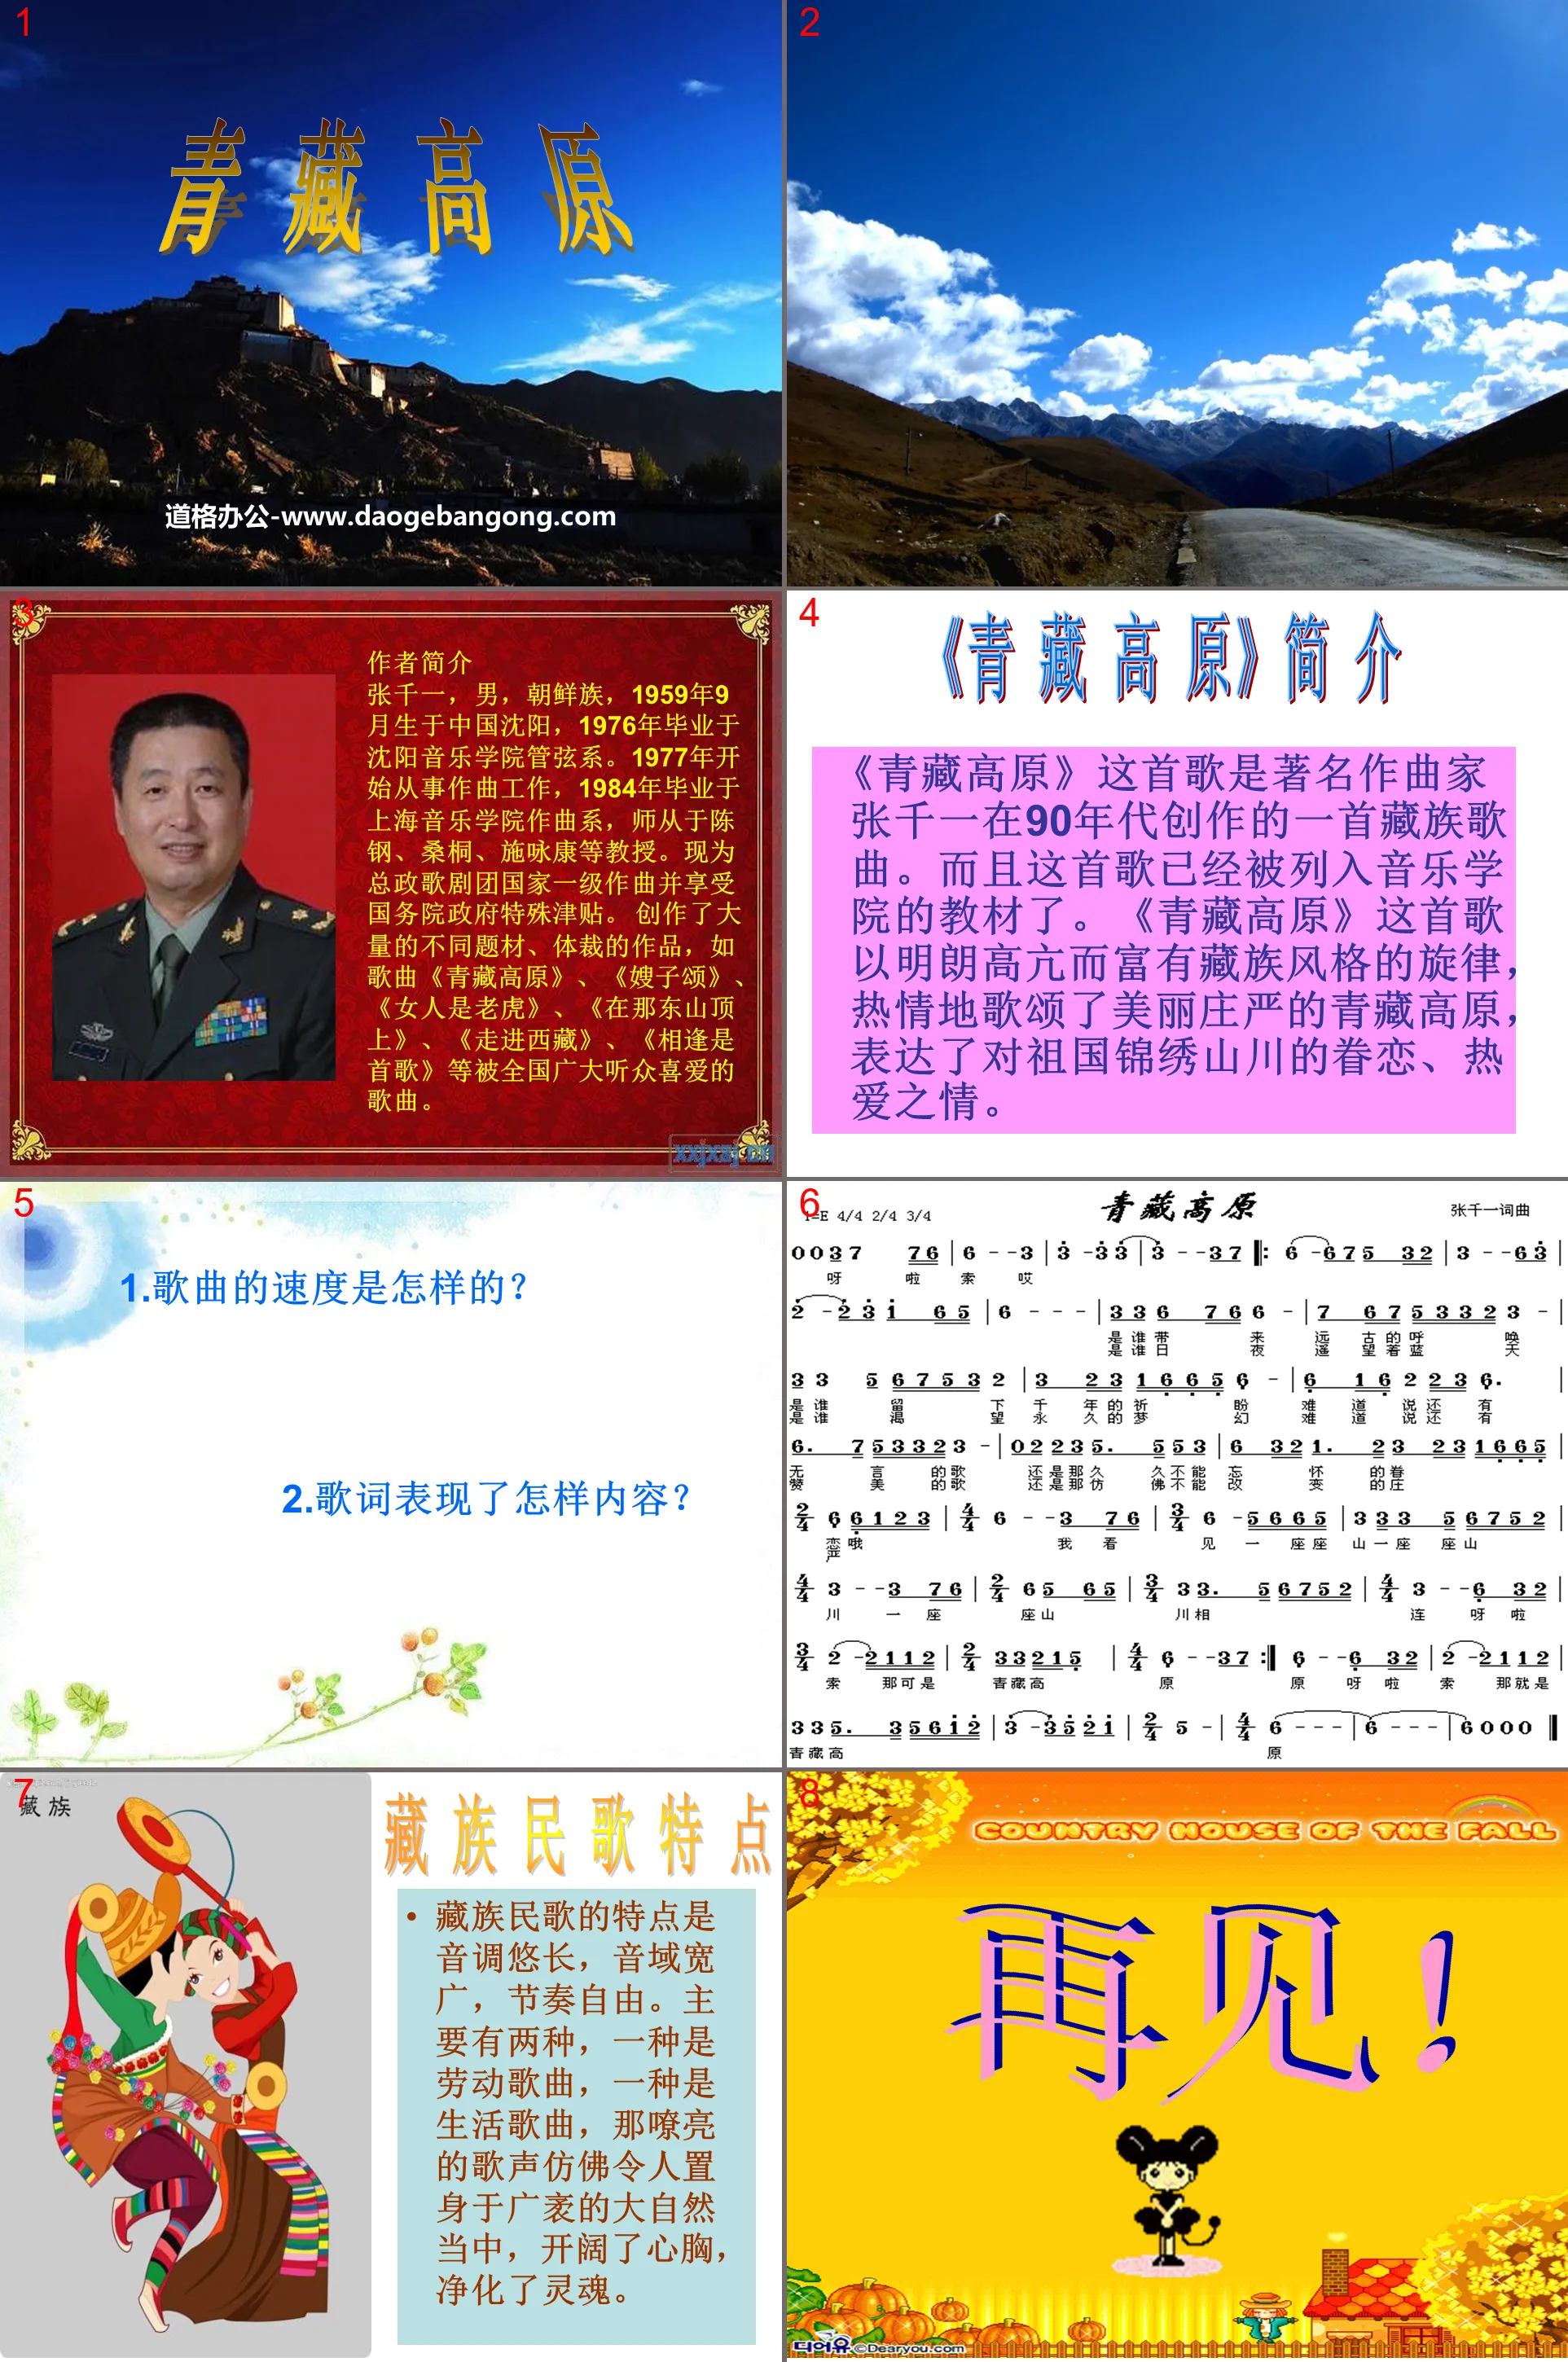 "Qinghai-Tibet Plateau" PPT courseware 2